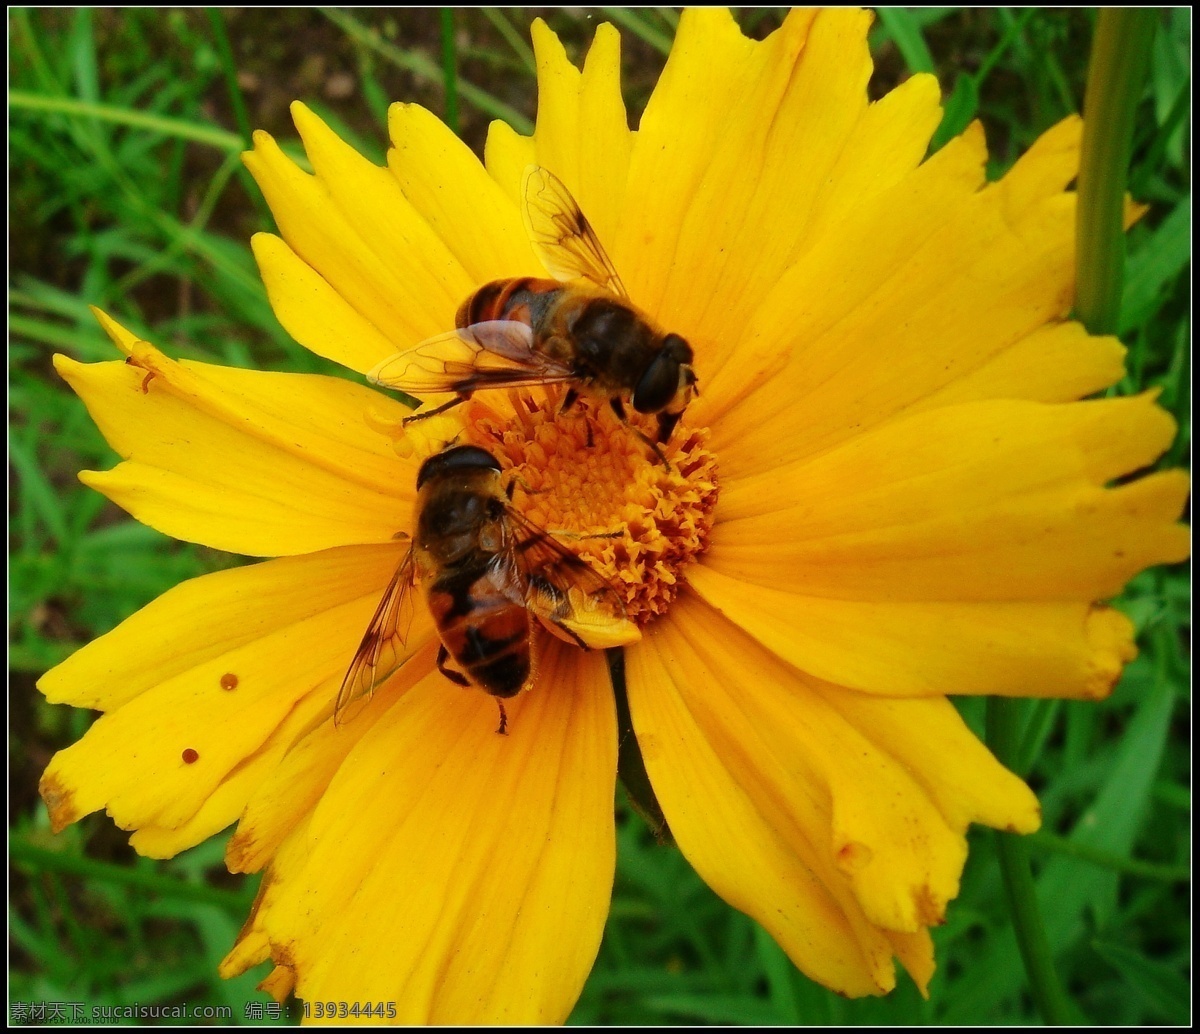 蜜蜂采花 蜜蜂 黄花 绿草 野葵花 绿叶 苍海 笑 微 距 小品 昆虫 生物世界